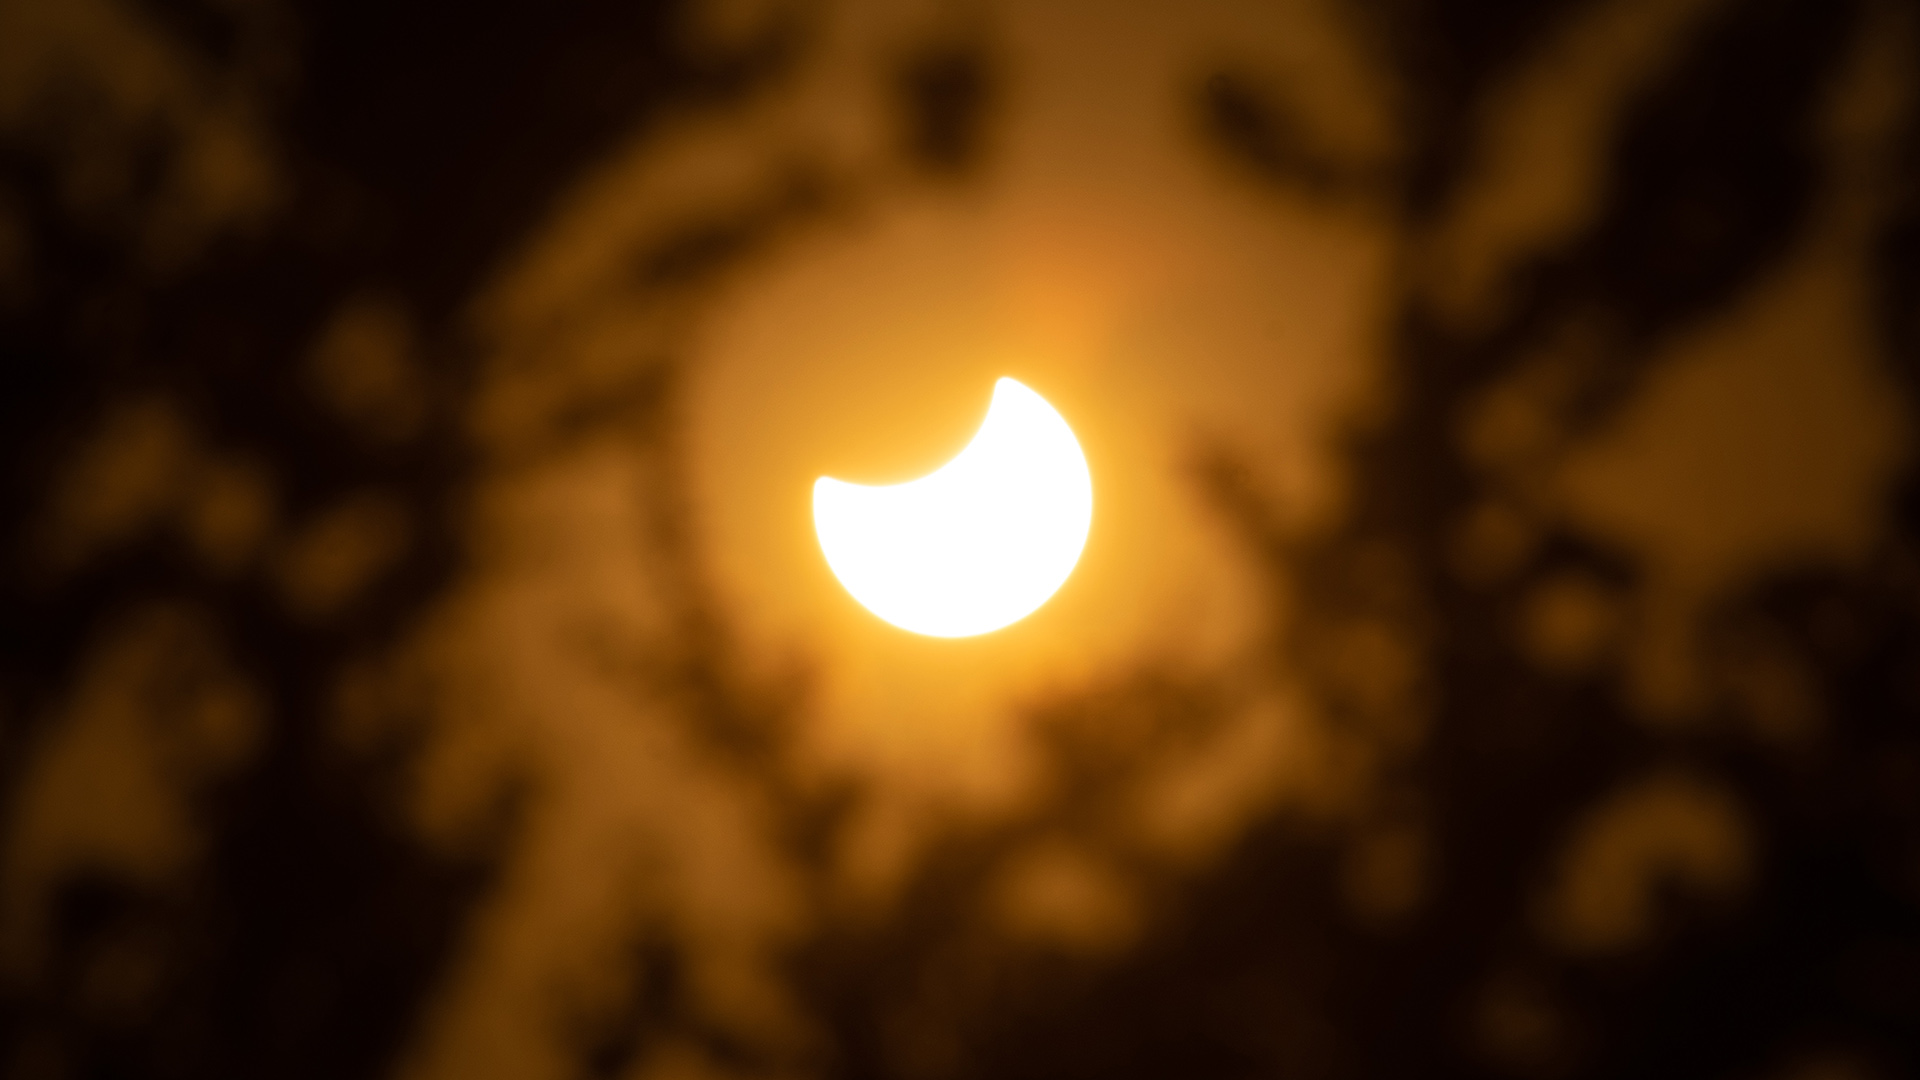 Der Mond verdeckt während einer partiellen Sonnenfinsternis Teile der Sonne. | picture alliance/dpa/ZUMA Press 